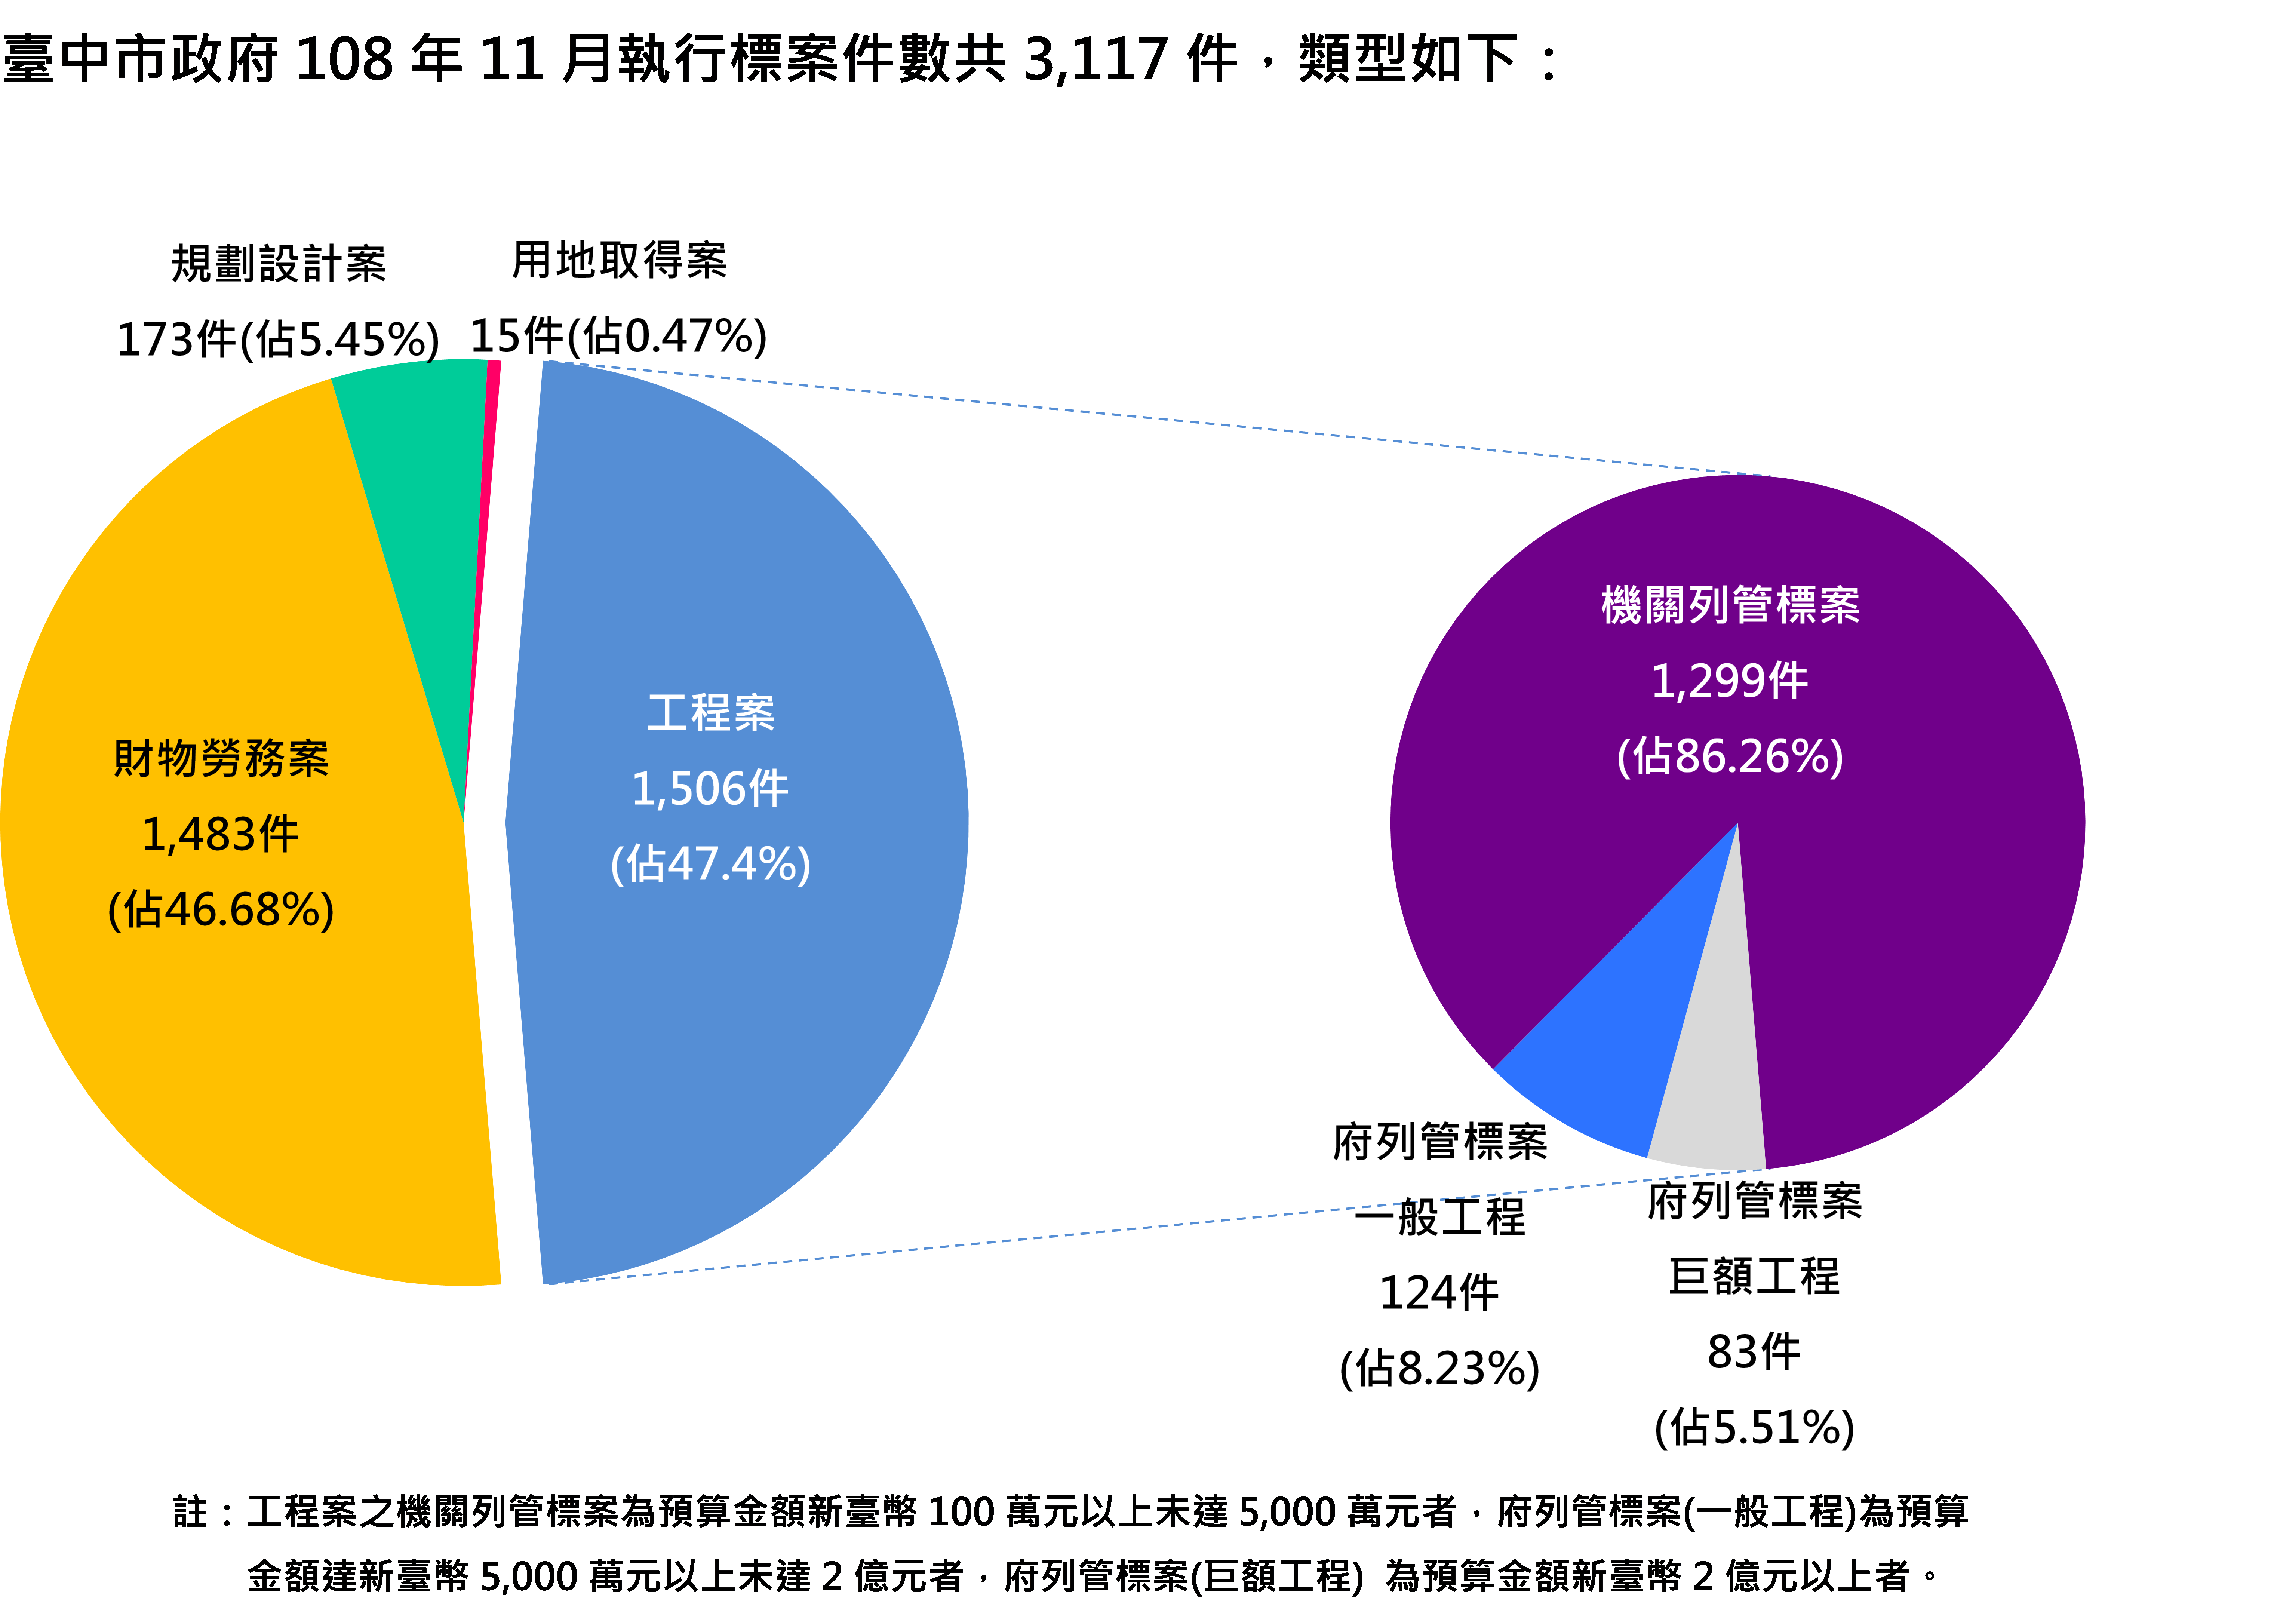 臺中市政府108年11月執行標案件數類型圖